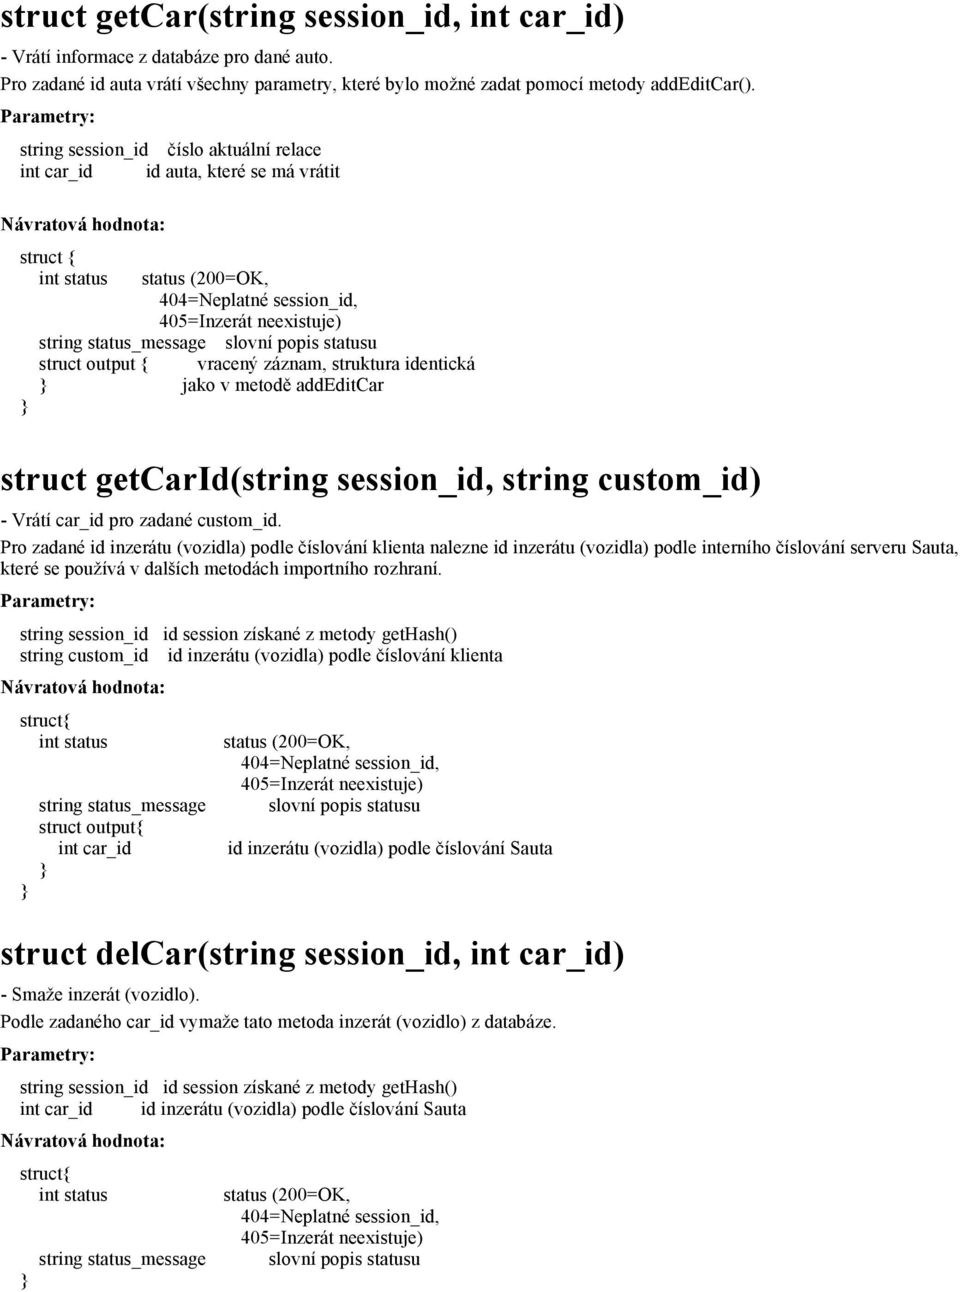 getcarid(string session_id, string custom_id - Vrátí car_id pro zadané custom_id.